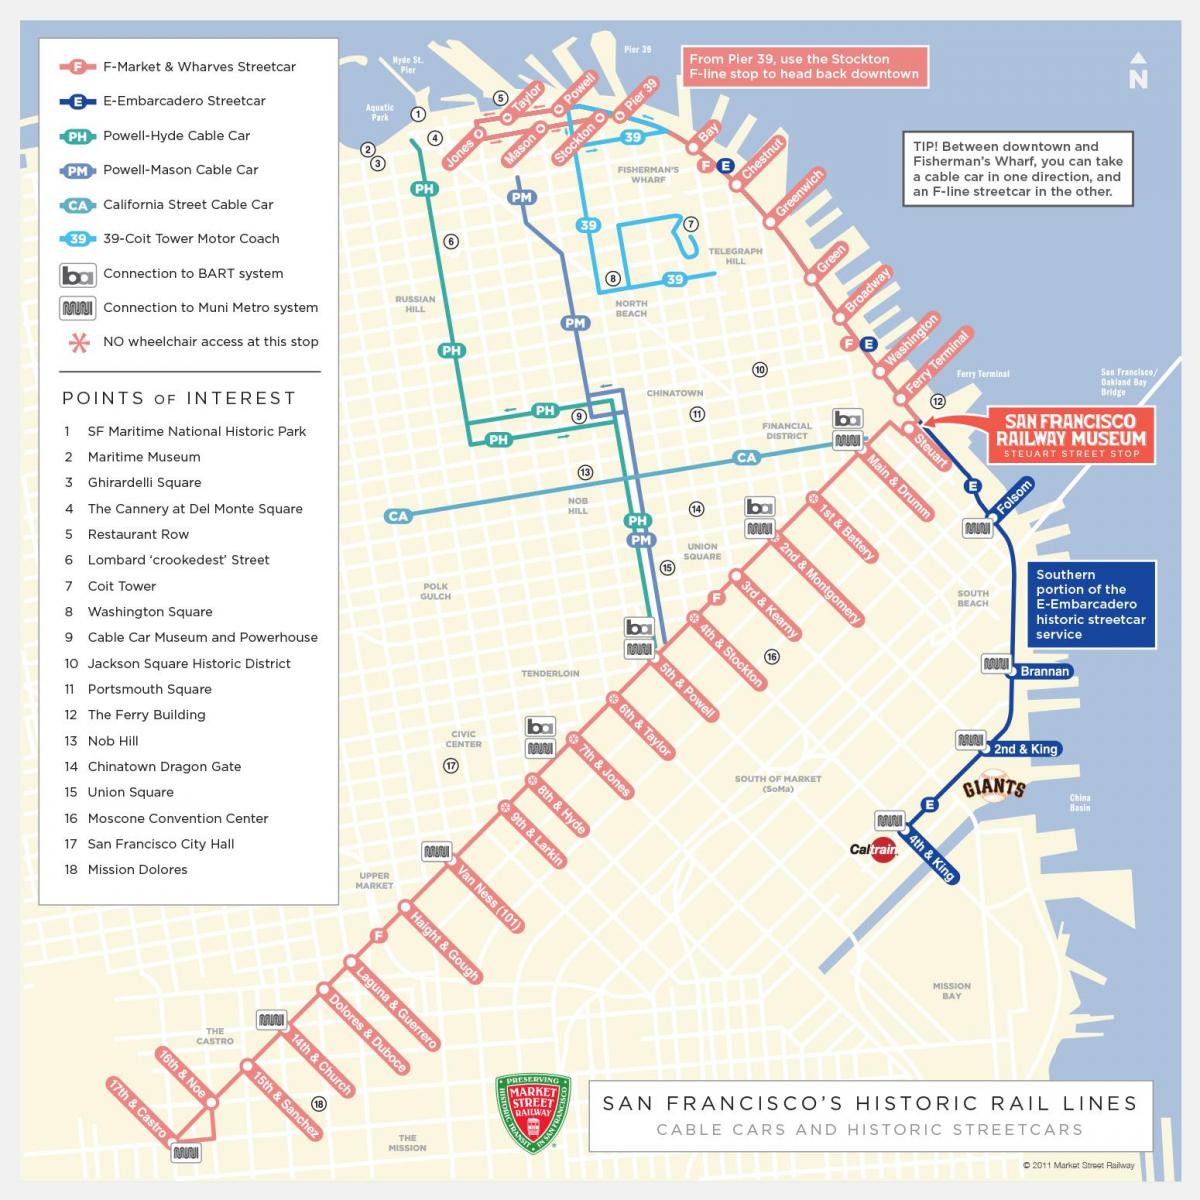 kort over San Francisco vogn rute